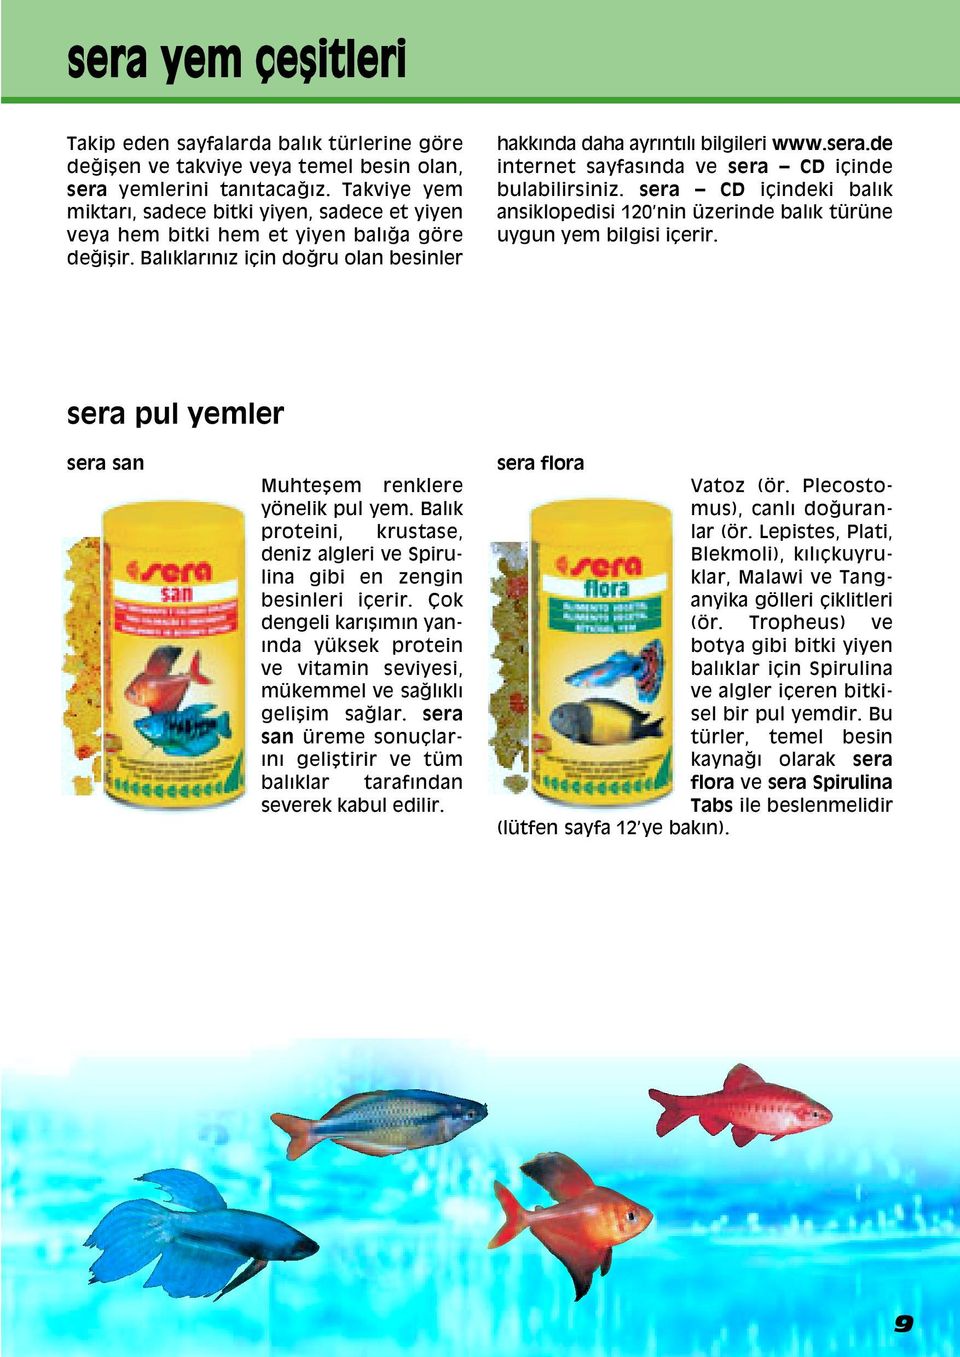 de internet sayfasında ve sera CD iáinde bulabilirsiniz. sera CD iáindeki balık ansiklopedisi 120 nin üzerinde balık türüne uygun yem bilgisi iáerir.